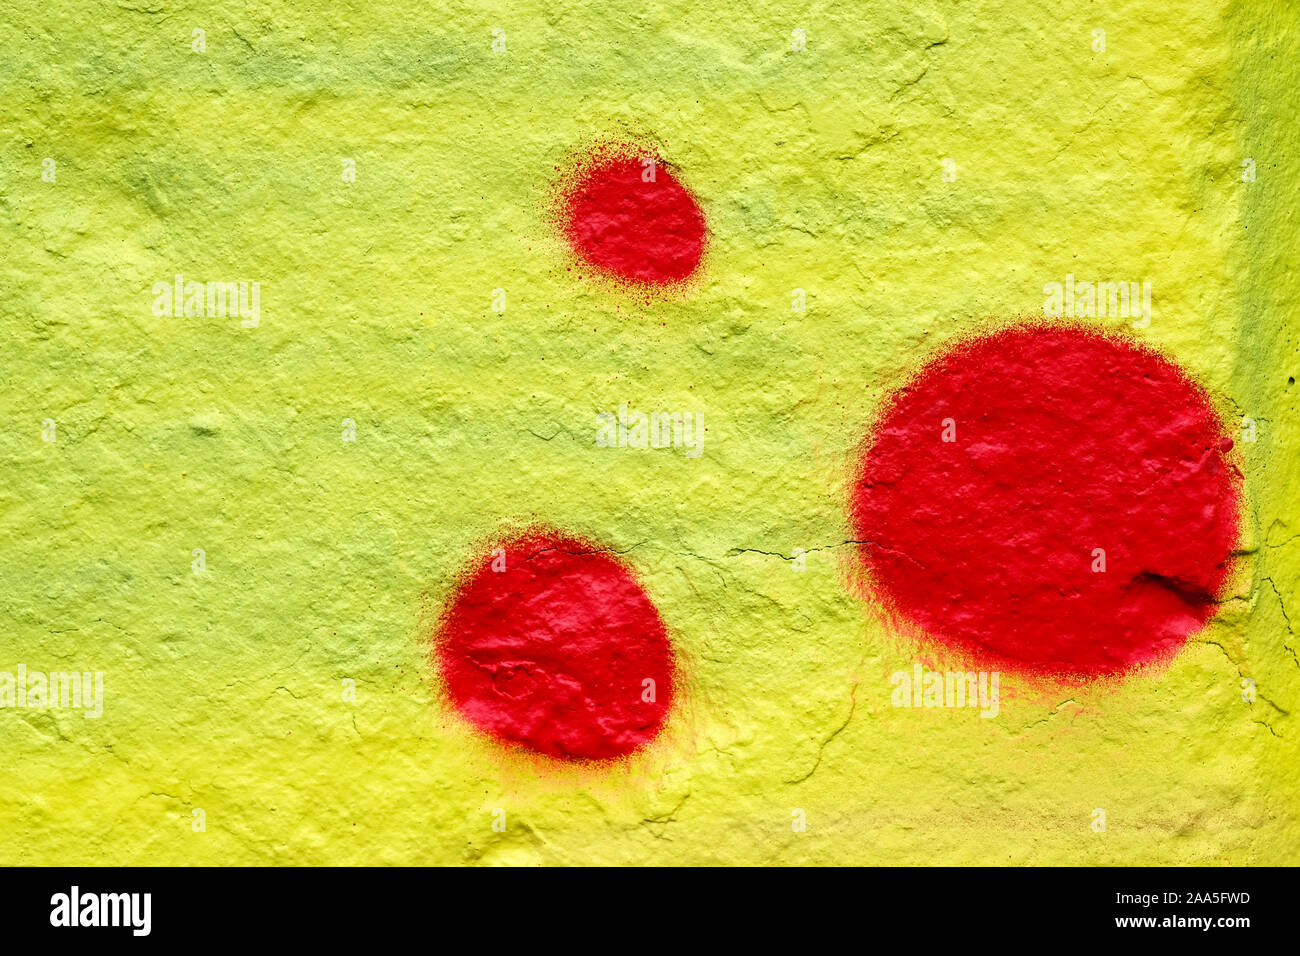 Tache de peinture rouge sur un fond jaune. Résumé fond de mur de pierre peinte. Les cercles rouges sur fond jaune. Banque D'Images